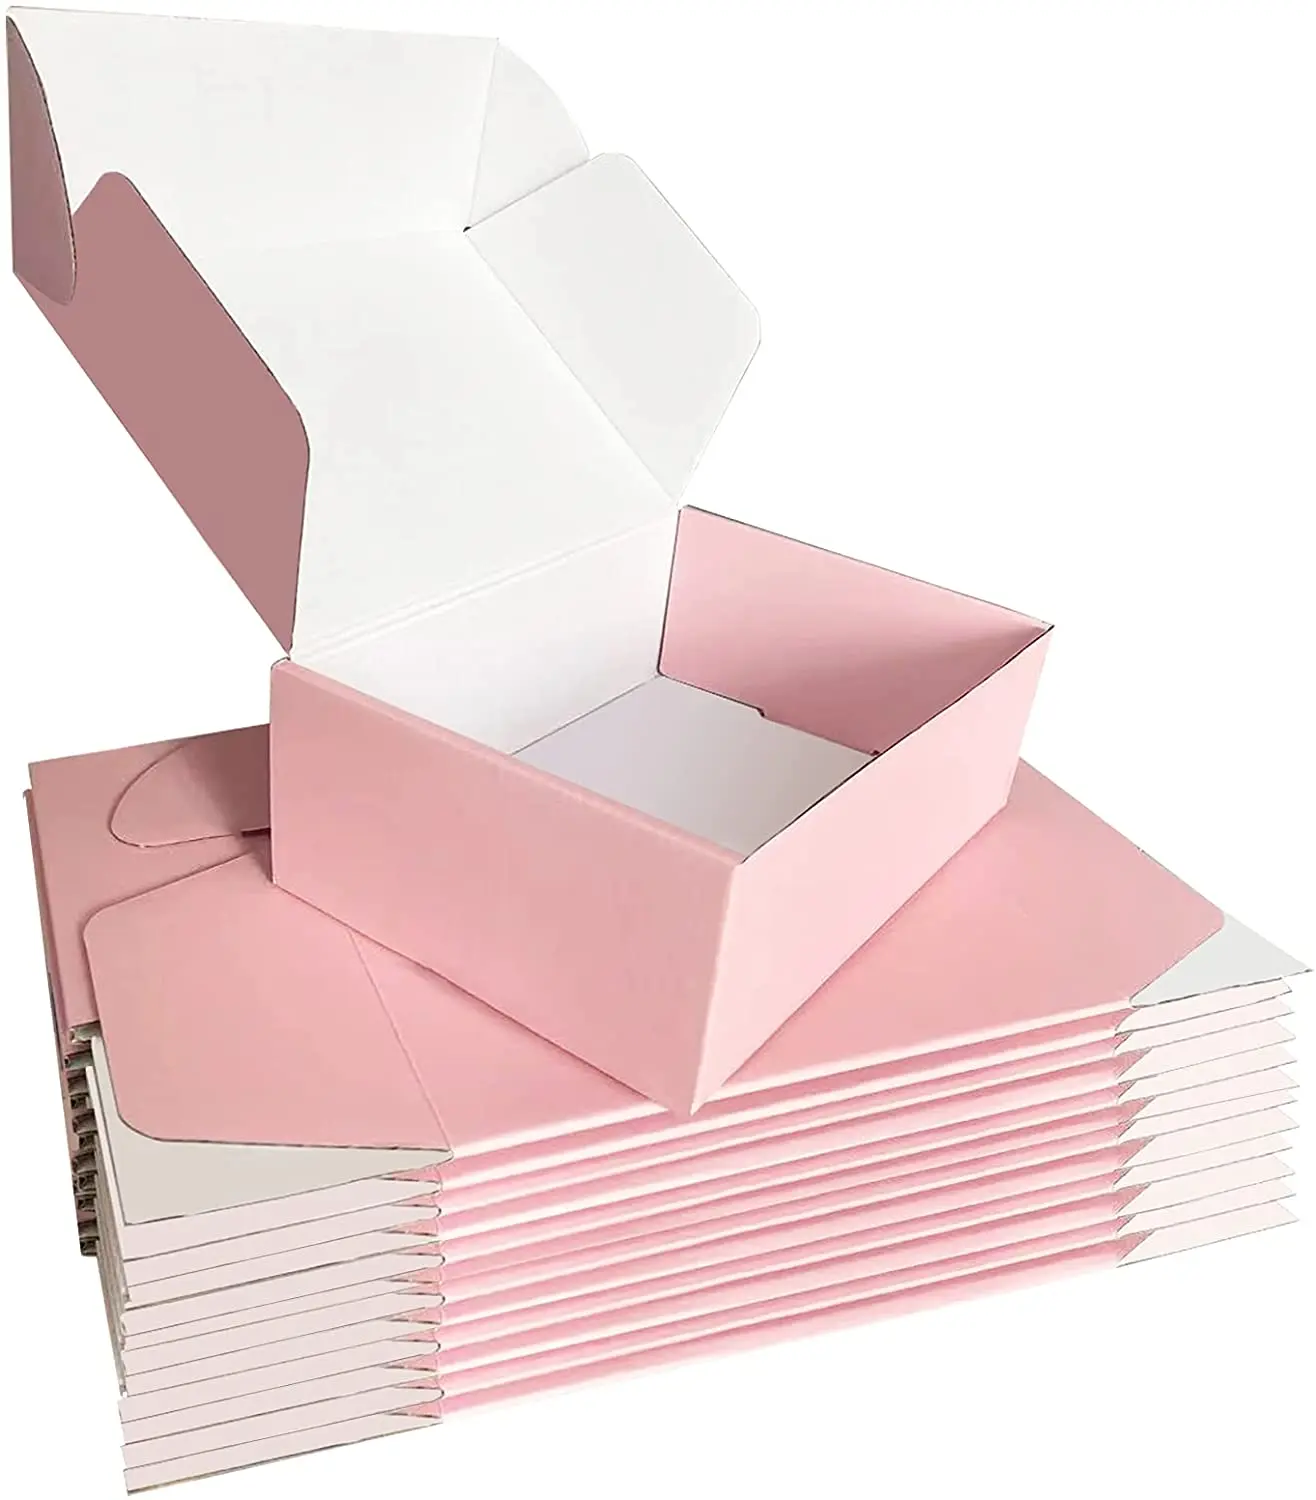 กล่องกระดาษลูกฟูกสำหรับส่งจดหมายกล่องของขวัญดีไซน์ล่าสุดตามสั่ง